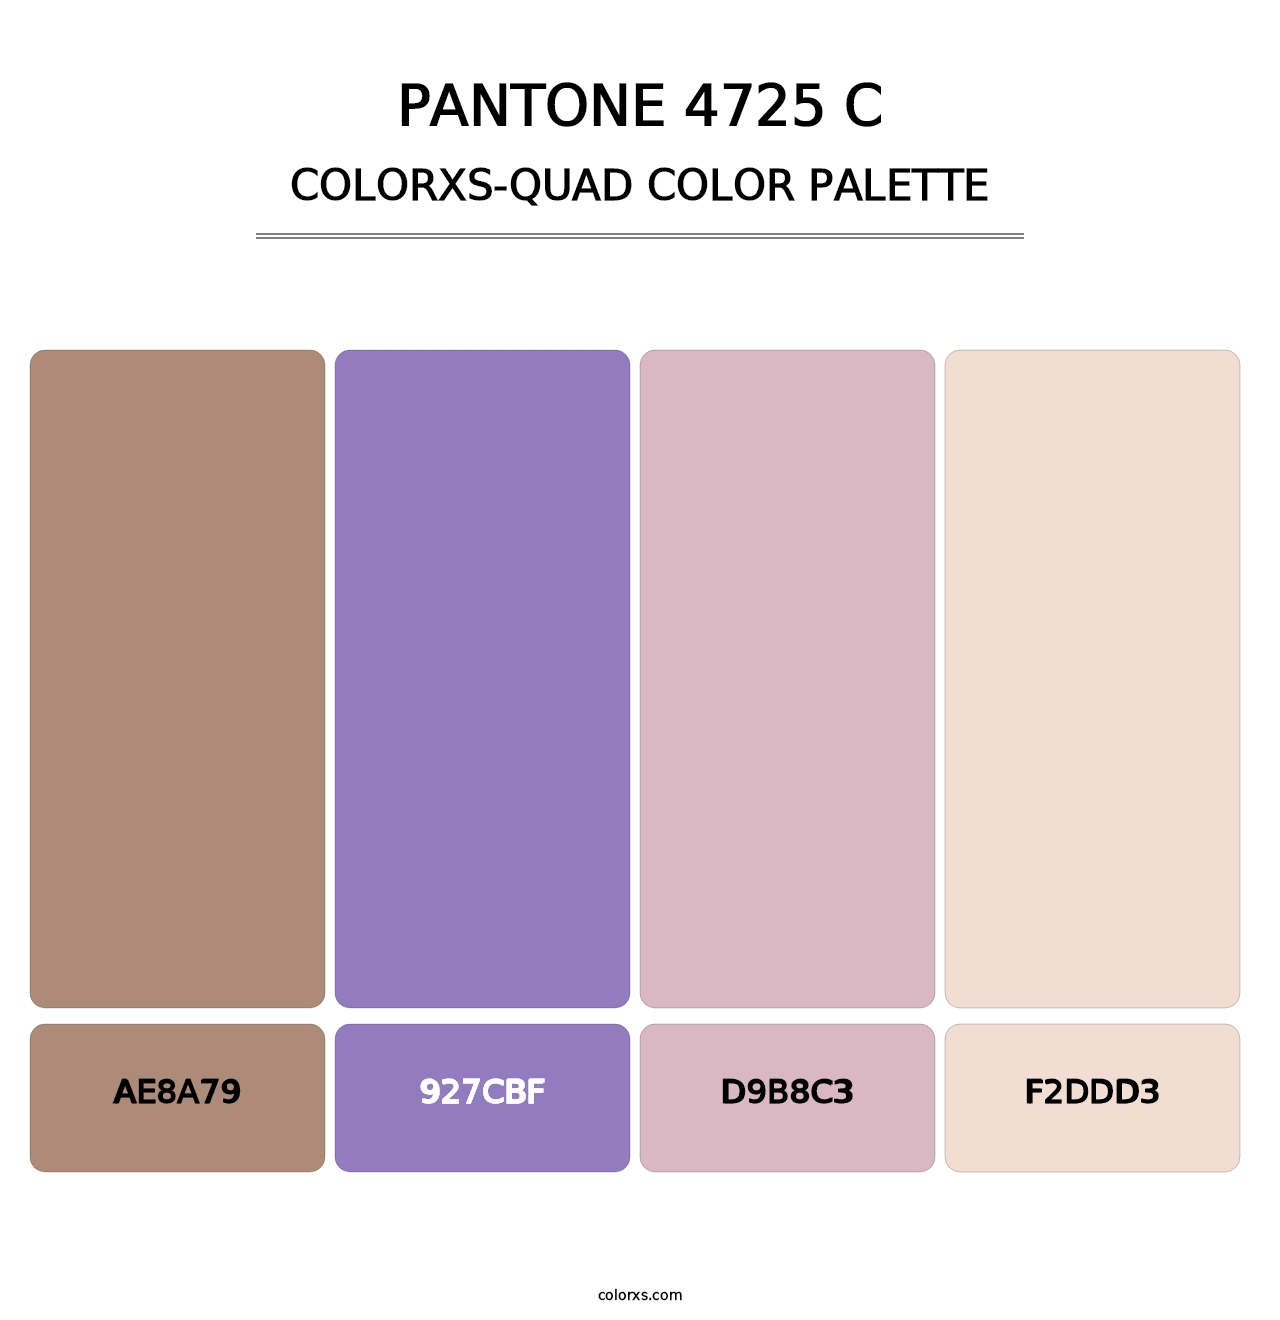 PANTONE 4725 C - Colorxs Quad Palette